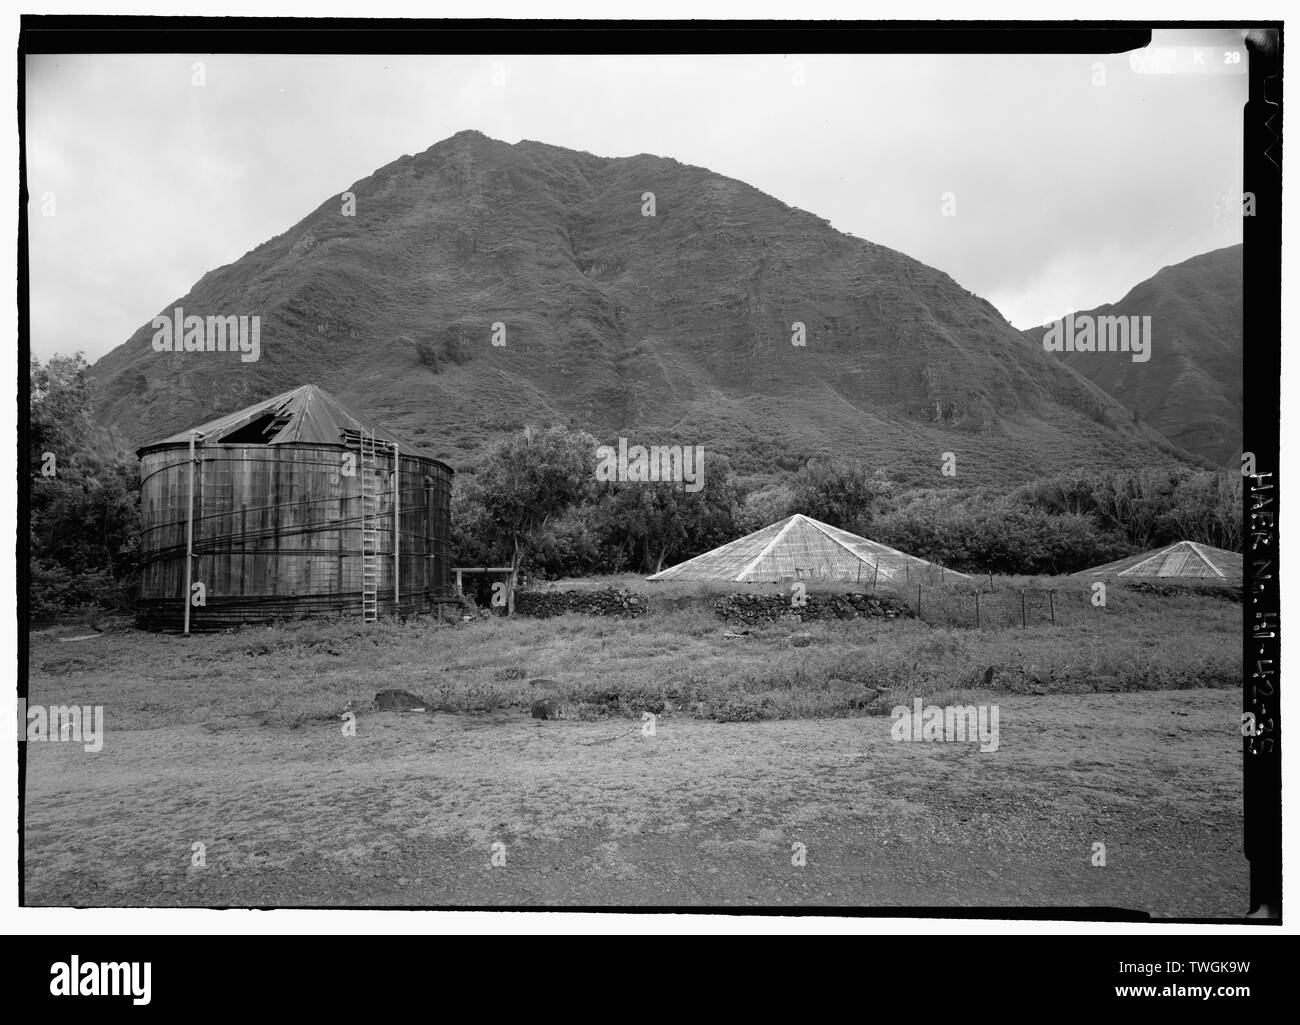 Réservoirs DU RÉSERVOIR LE LONG DE DAMIEN ROUTE PRÈS DE KAUHAKO CRATER (282'). À GAUCHE DU RÉSERVOIR DE BOIS A ÉTÉ ÉRIGÉE CA. 1969. Réservoirs de ciment de maçonnerie doublée avec toit en tôle ondulée, CONSTRUIT CA. 1894, sont situés à droite. - Système d'approvisionnement en eau, Kalaupapa Waikolu Vallée pour règlement Kalaupapa, île de Molokai, Kalawao Comté, Kalaupapa, HI Banque D'Images